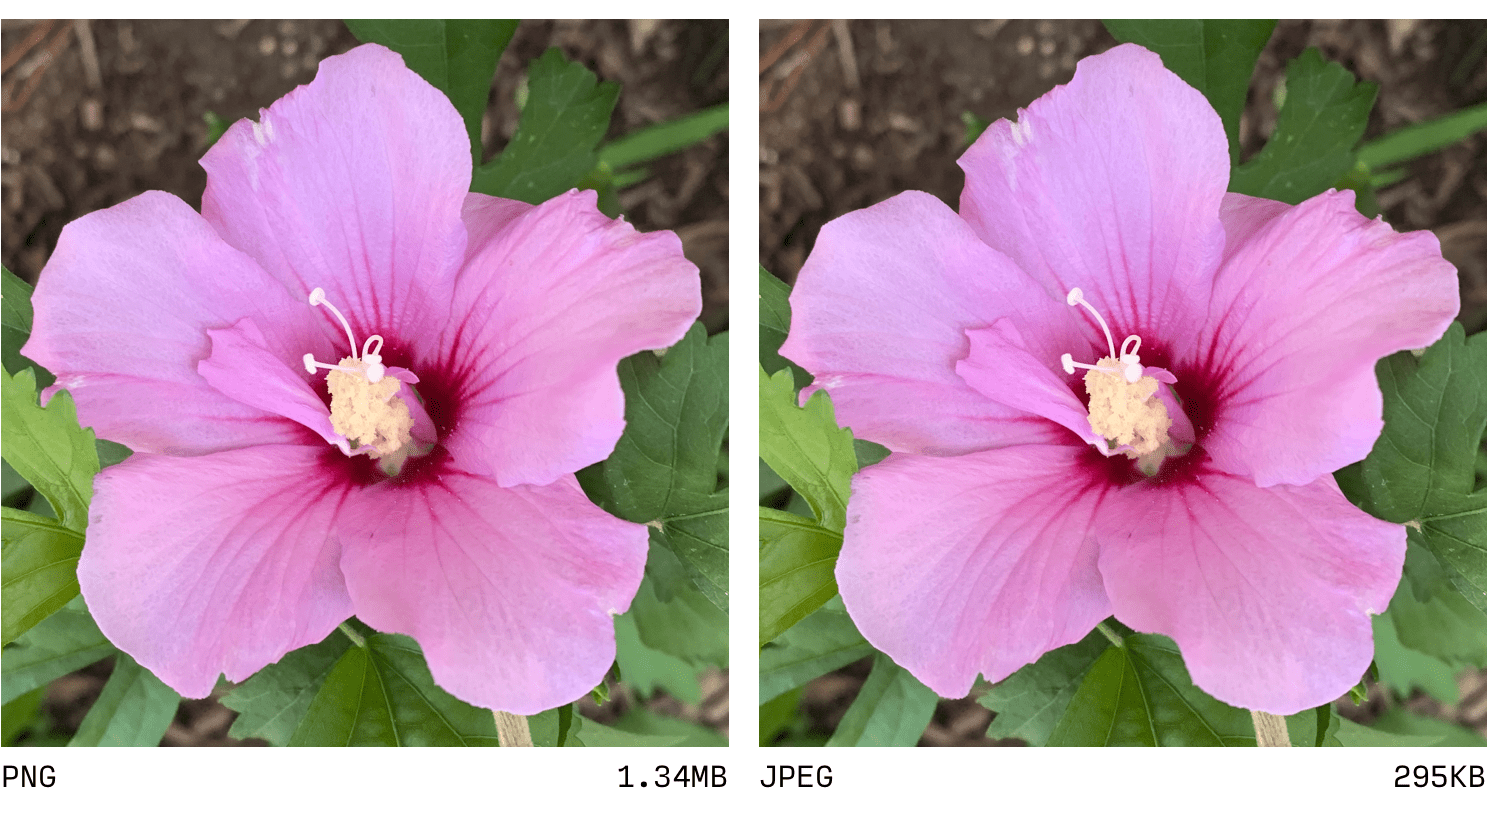 JPEG und PNG im Vergleich